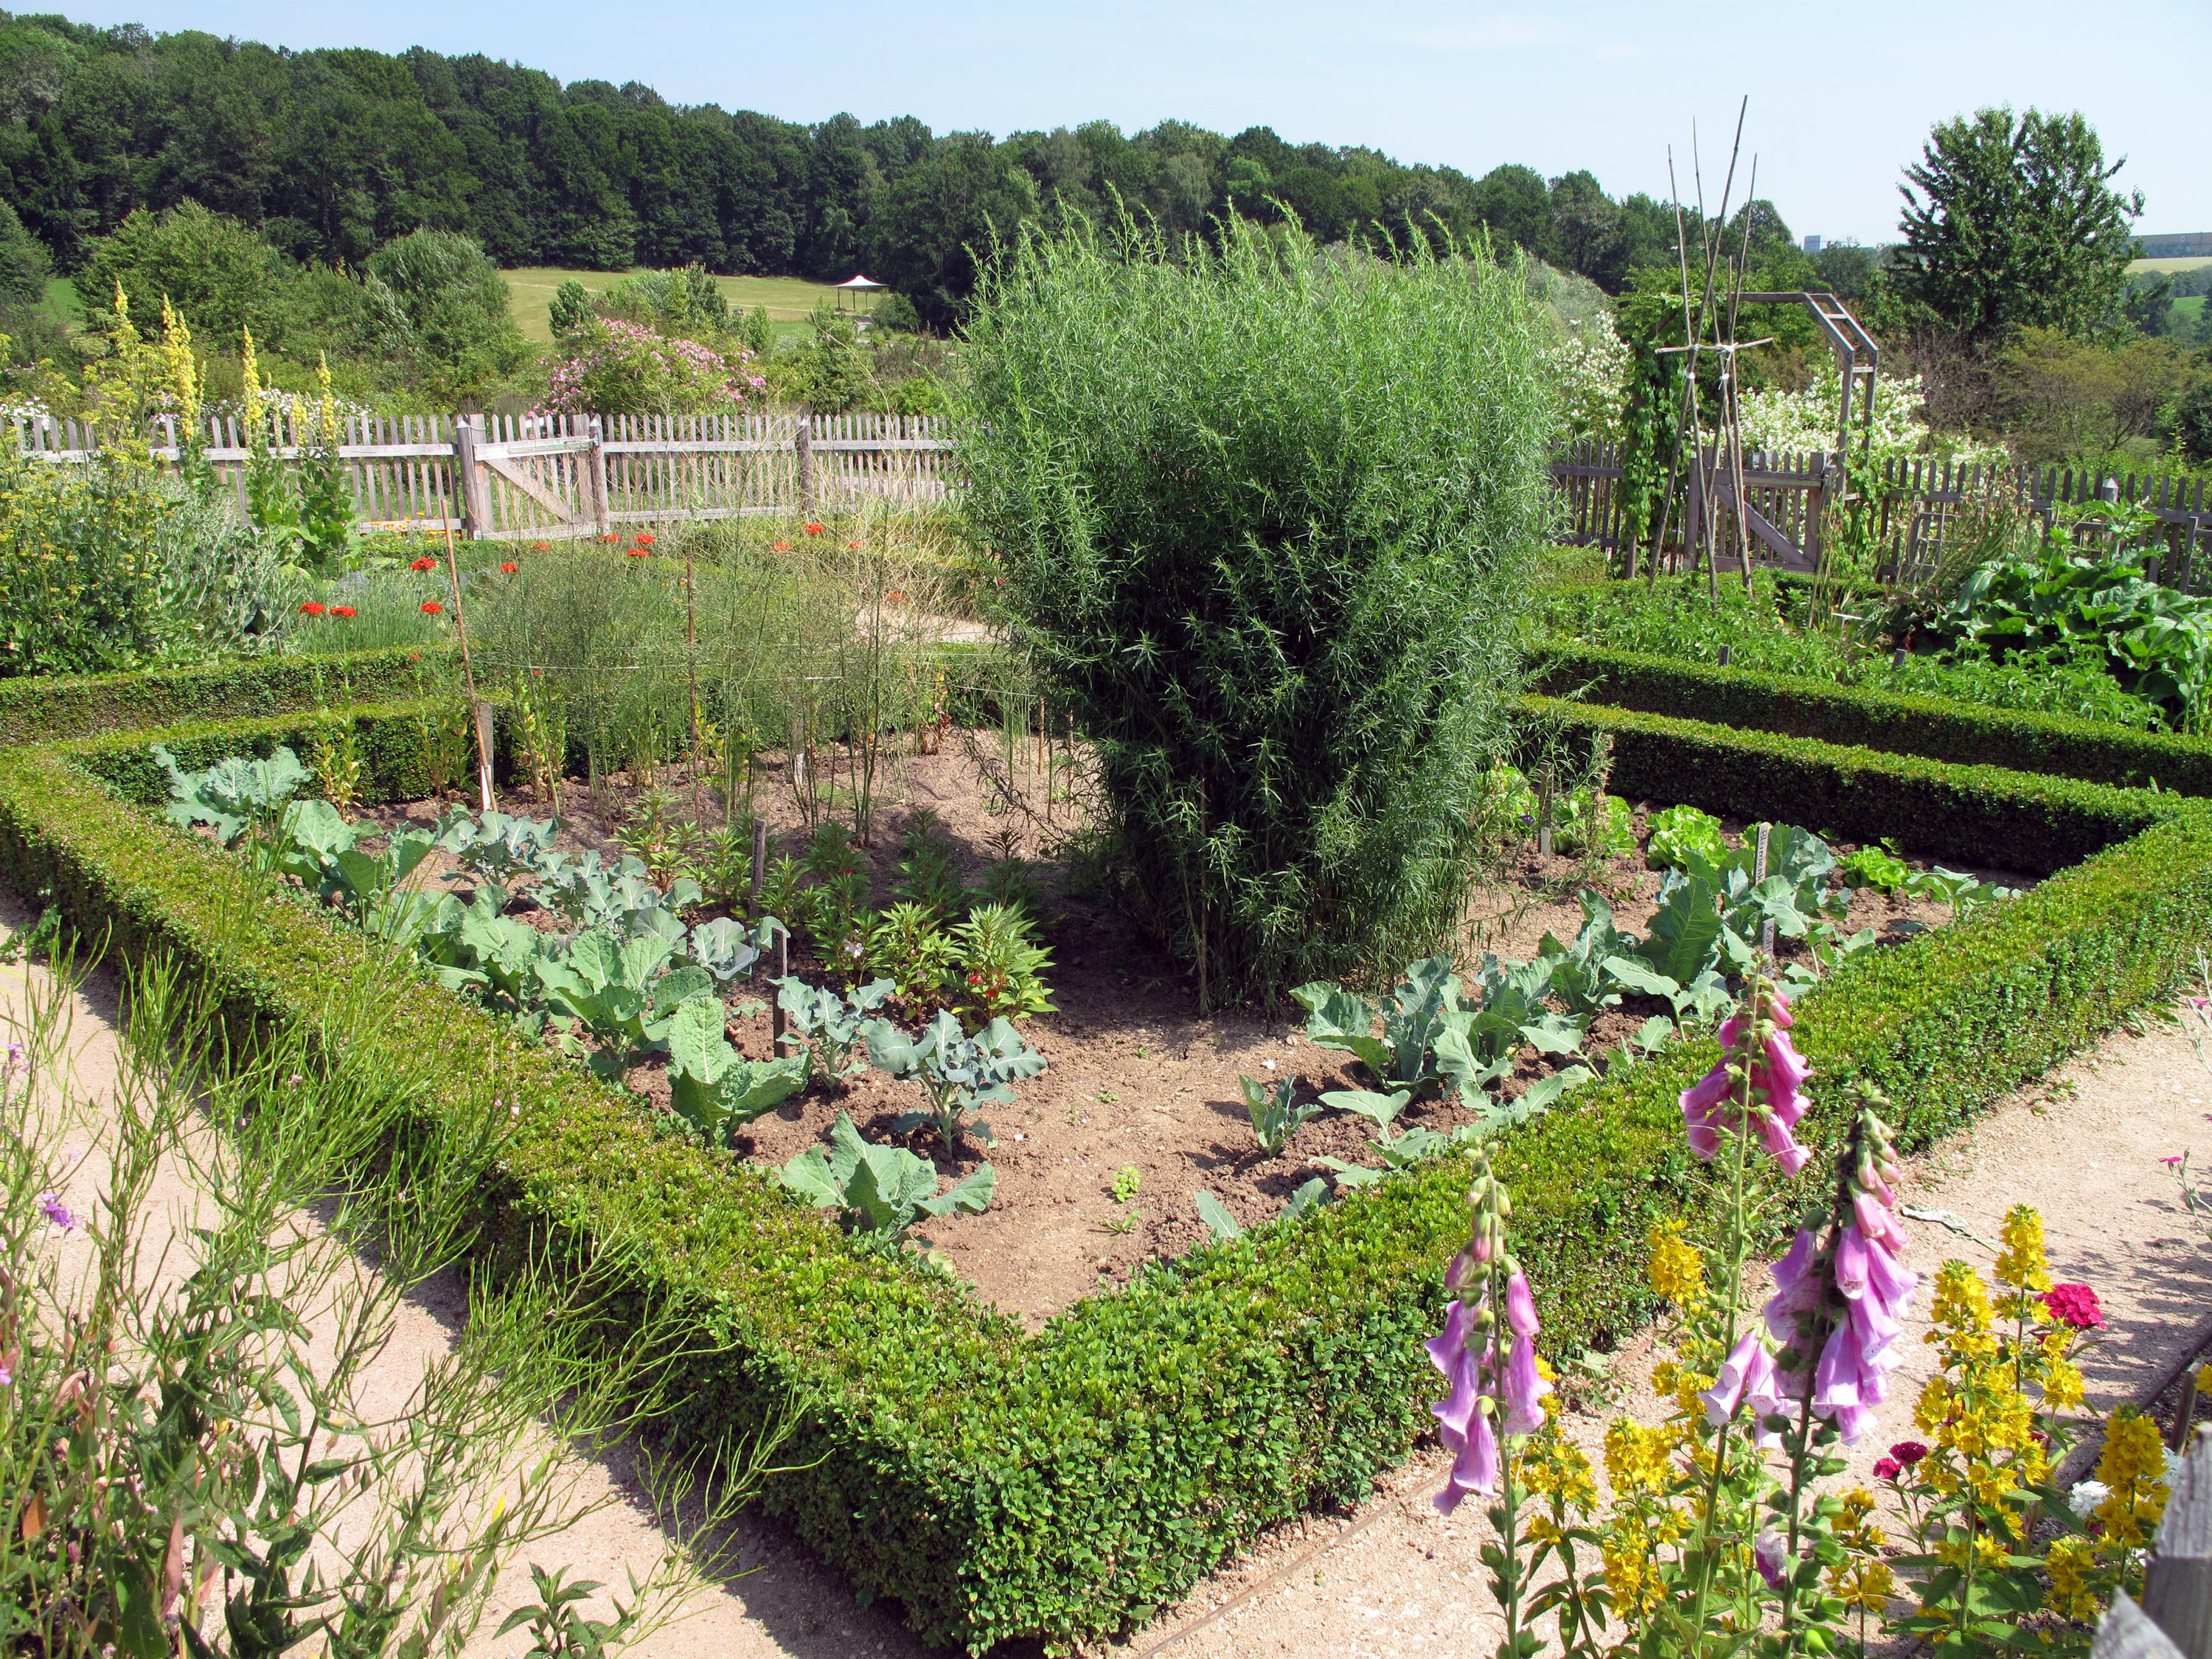  Ein romantischer Bauerngarten mit bunten Blütenträumen, feinem Gemüse und aromatisch duftenden Kräutern ist ein besonderes Gartenparadies. 